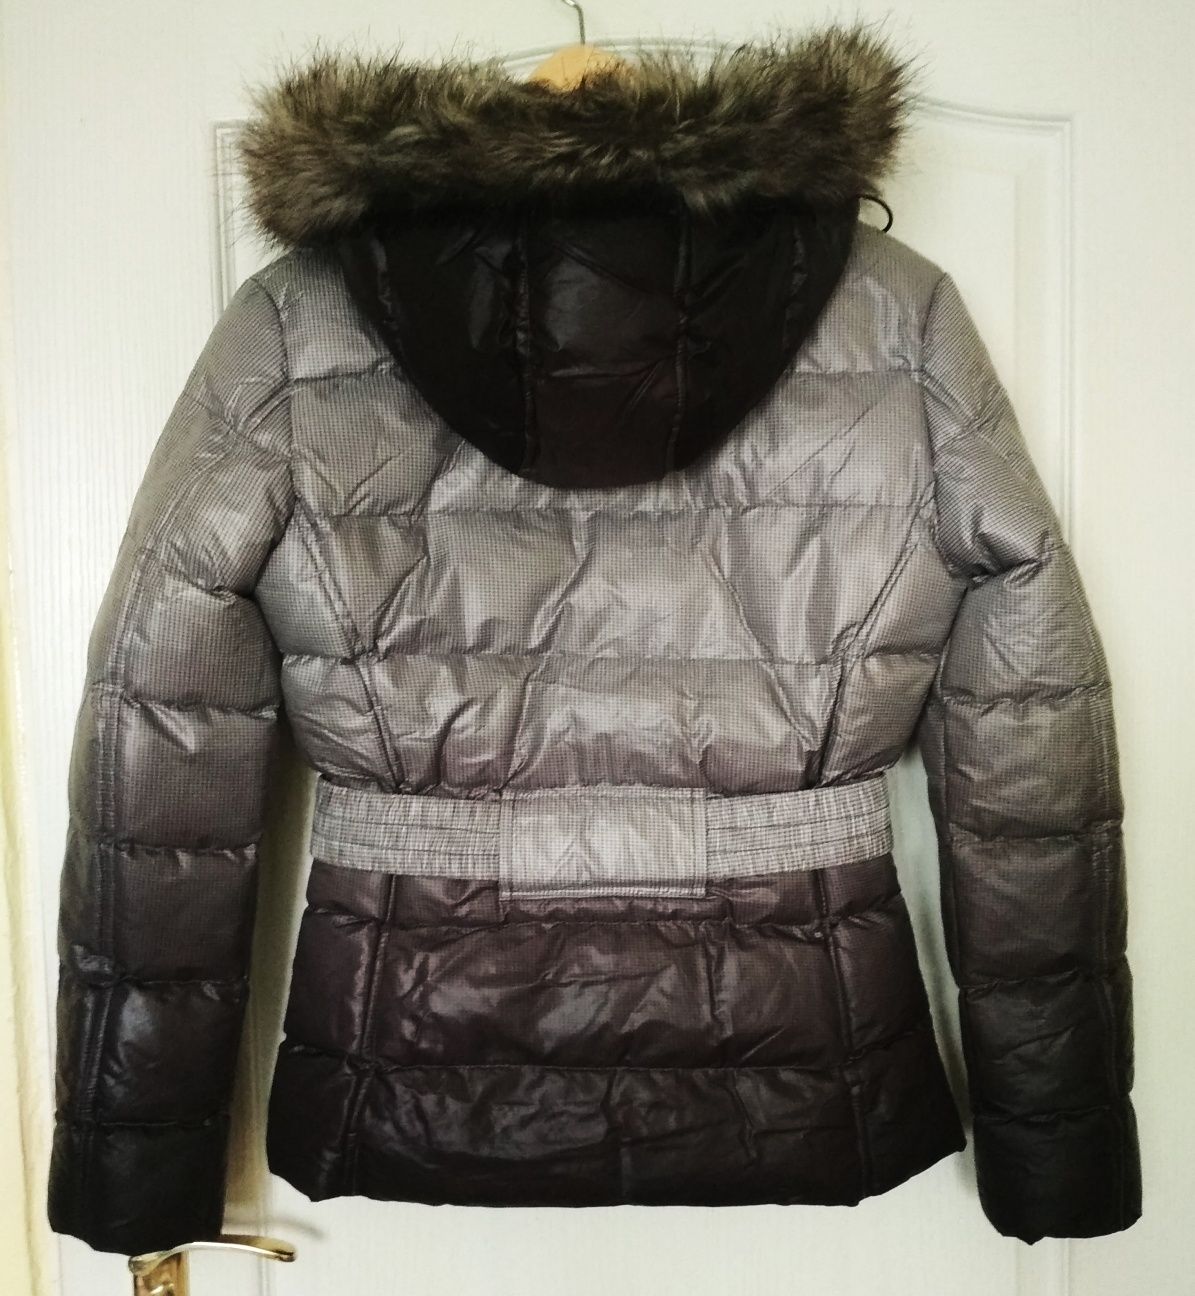 Włoska kurtka zimowa/na zimę, BC Be Cool, bardzo ciepła, rozm. S/36